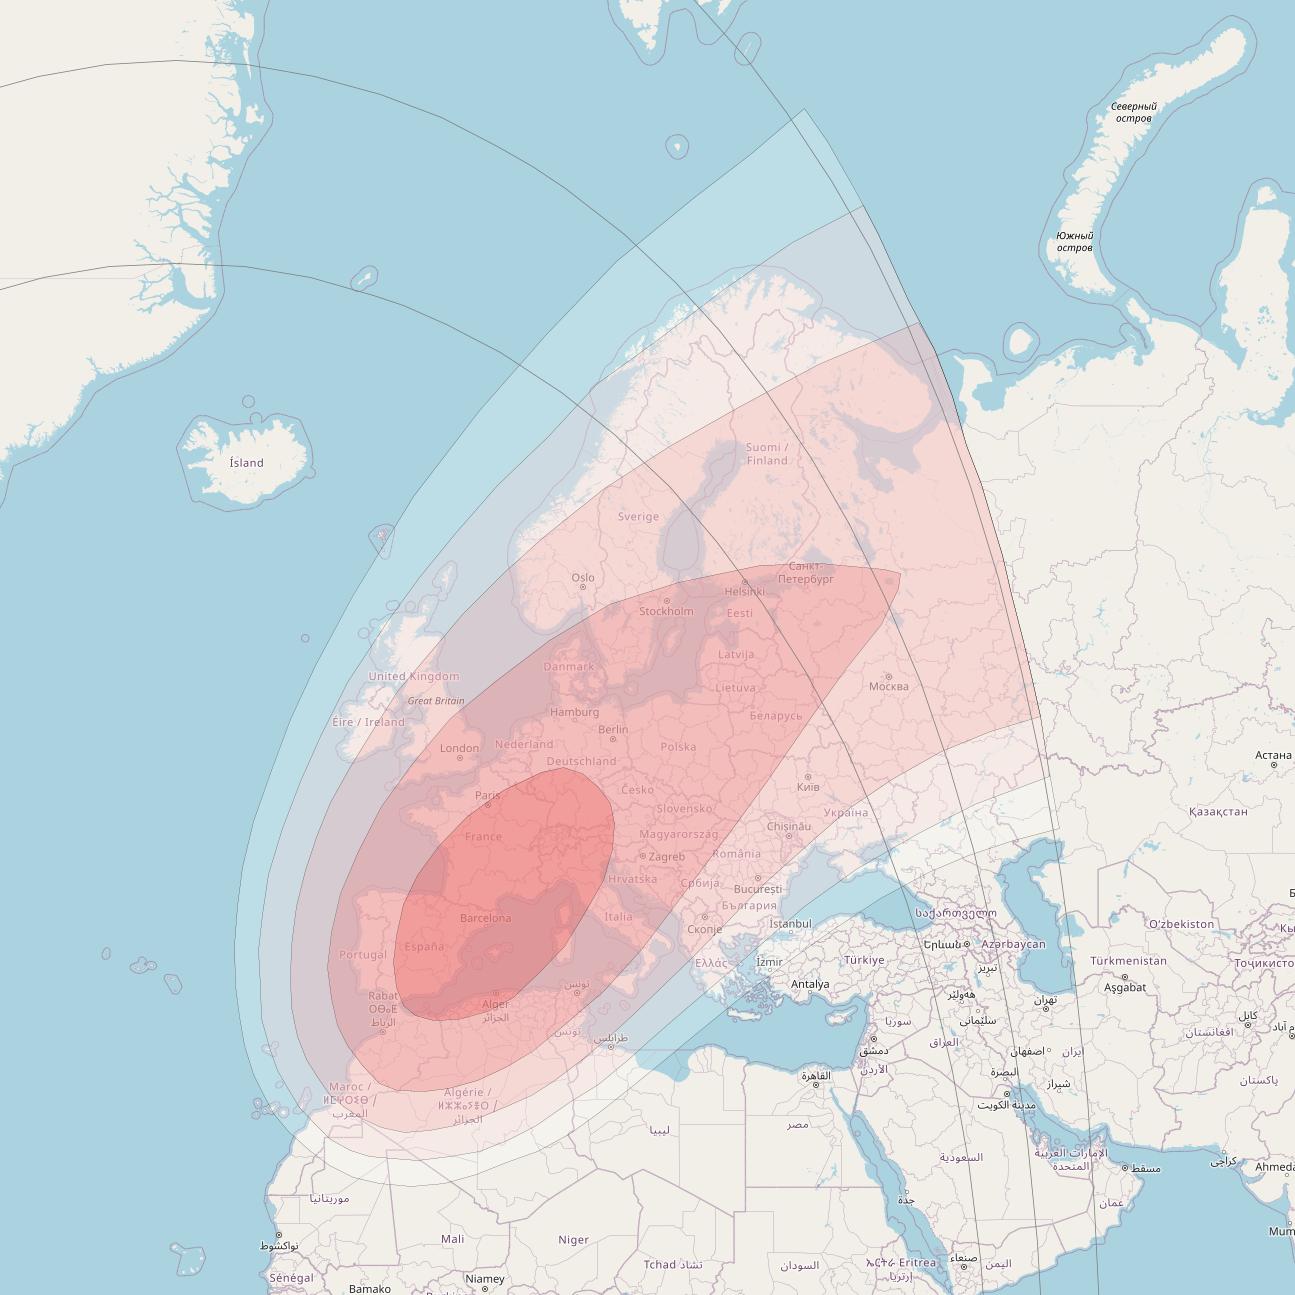 Intelsat 905 at 24° W downlink Ku-band Spot 1 Beam coverage map